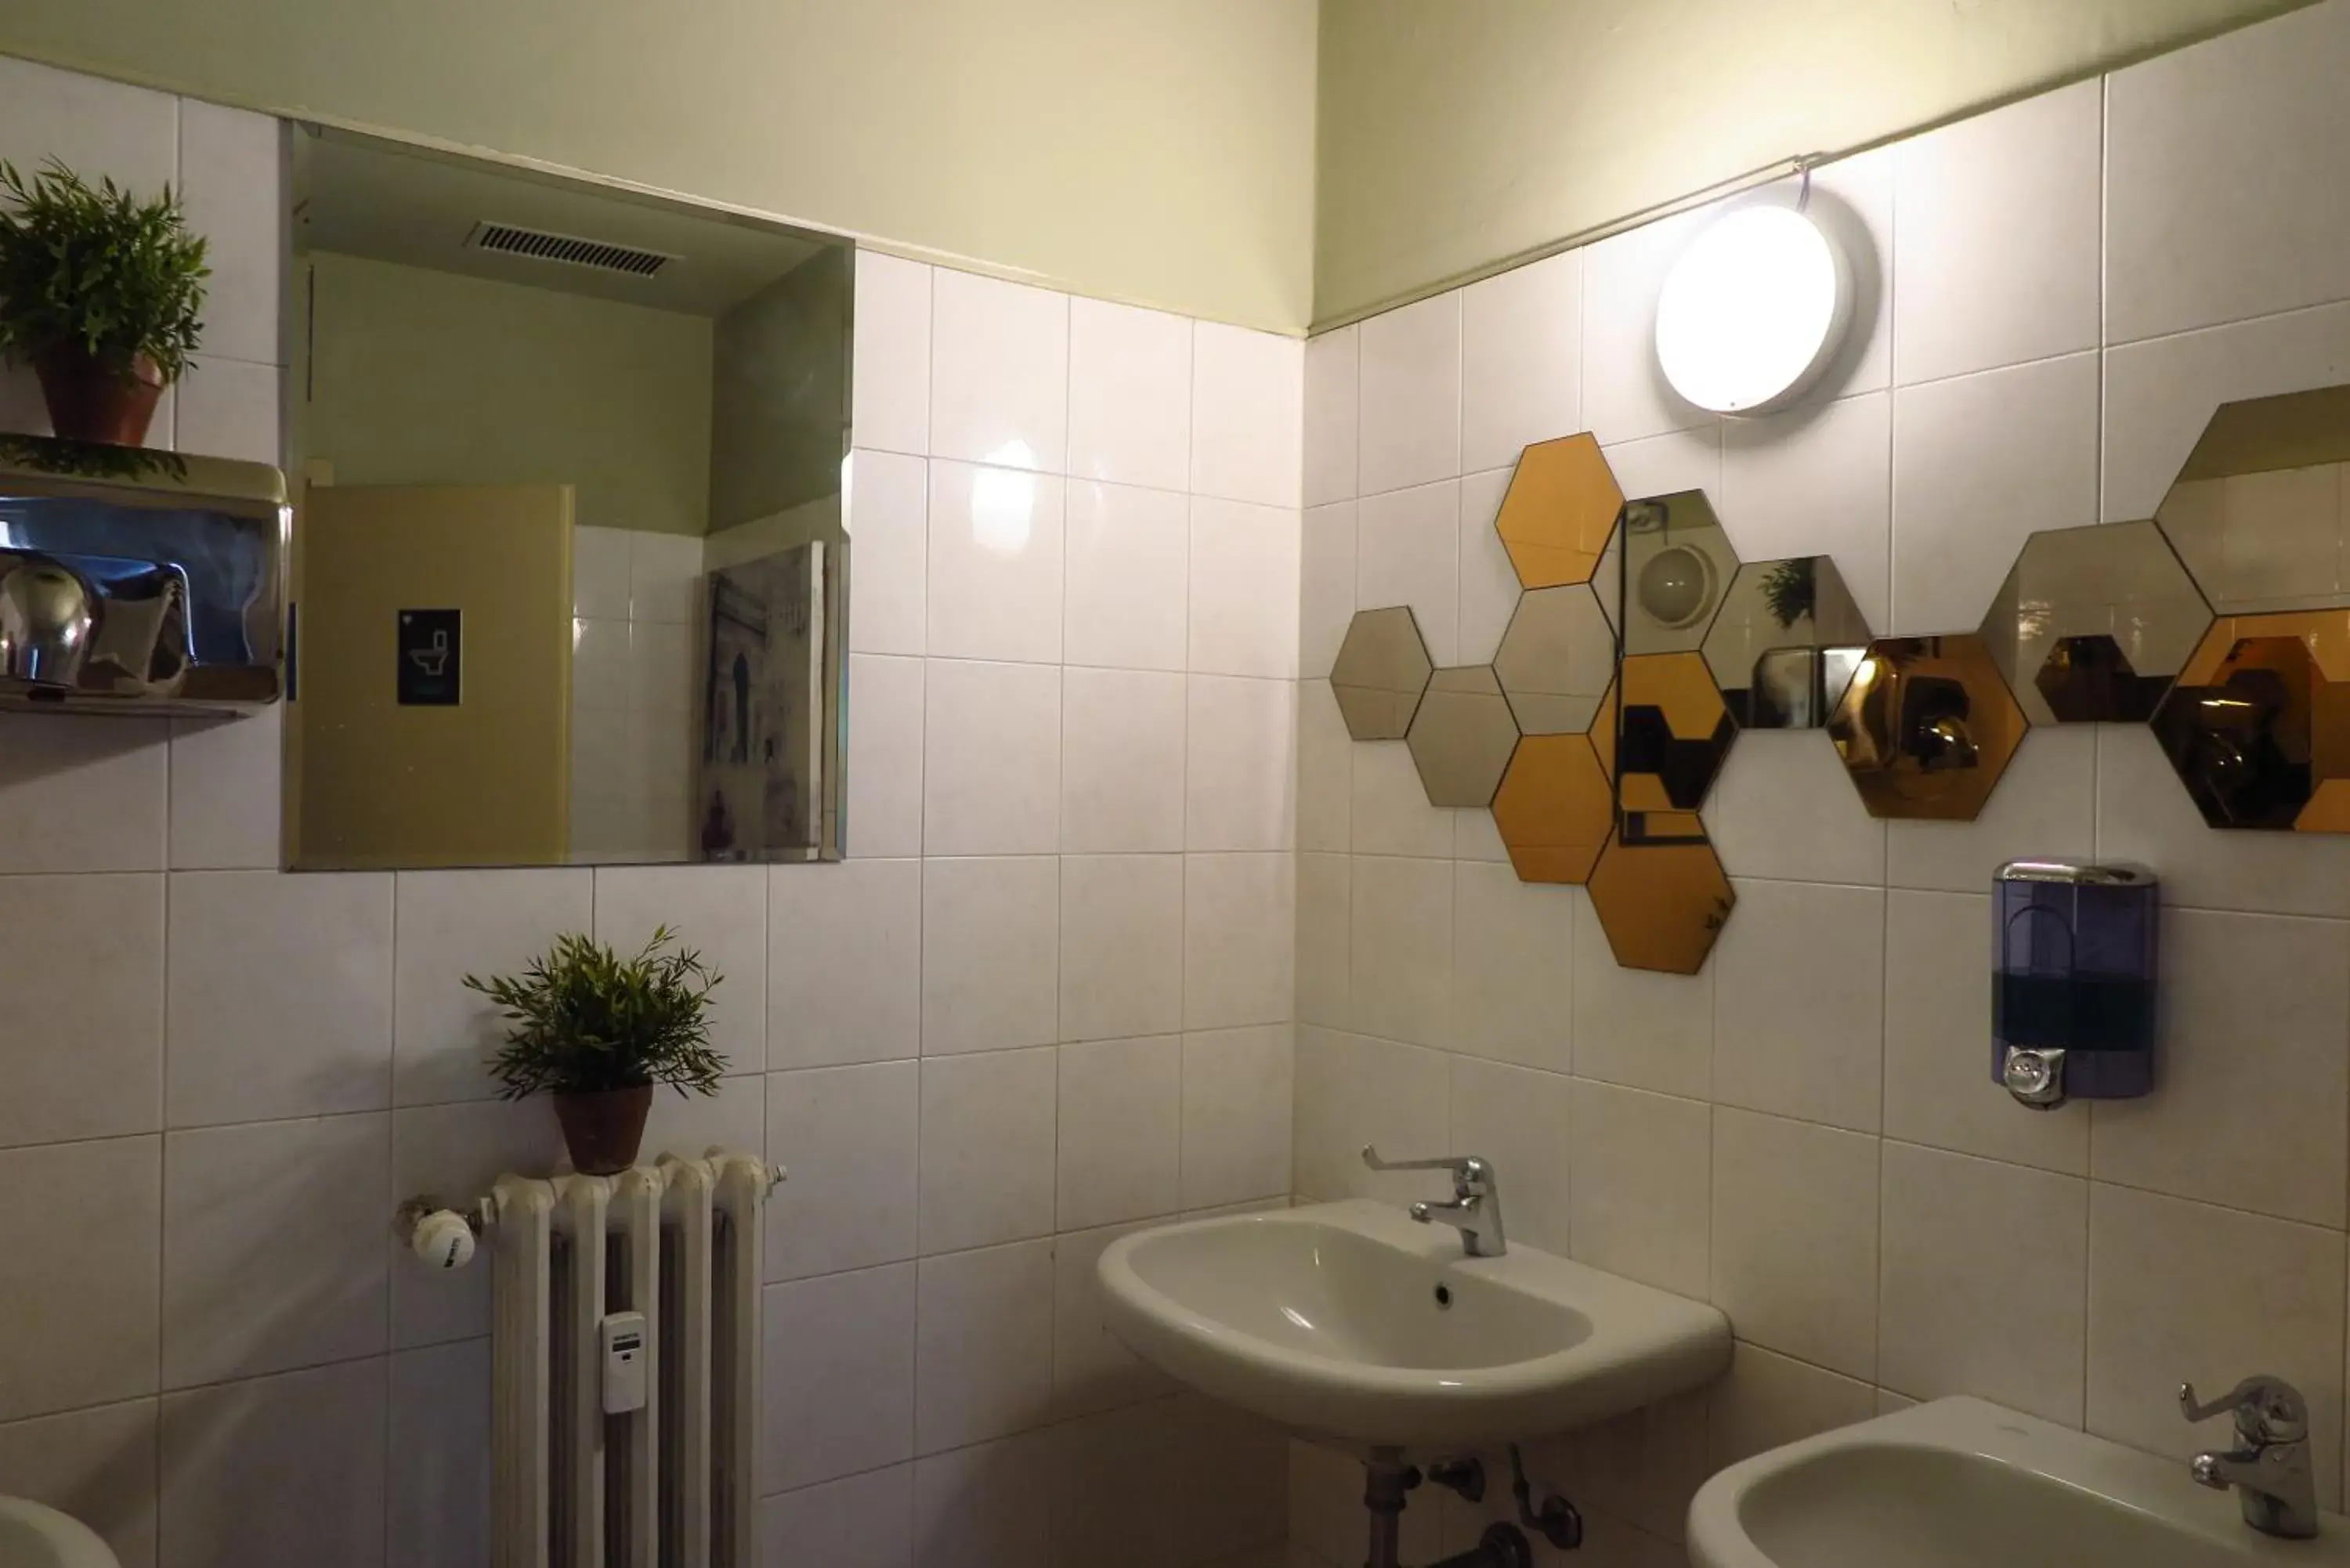 Toilet, Bathroom in Koala Hostel